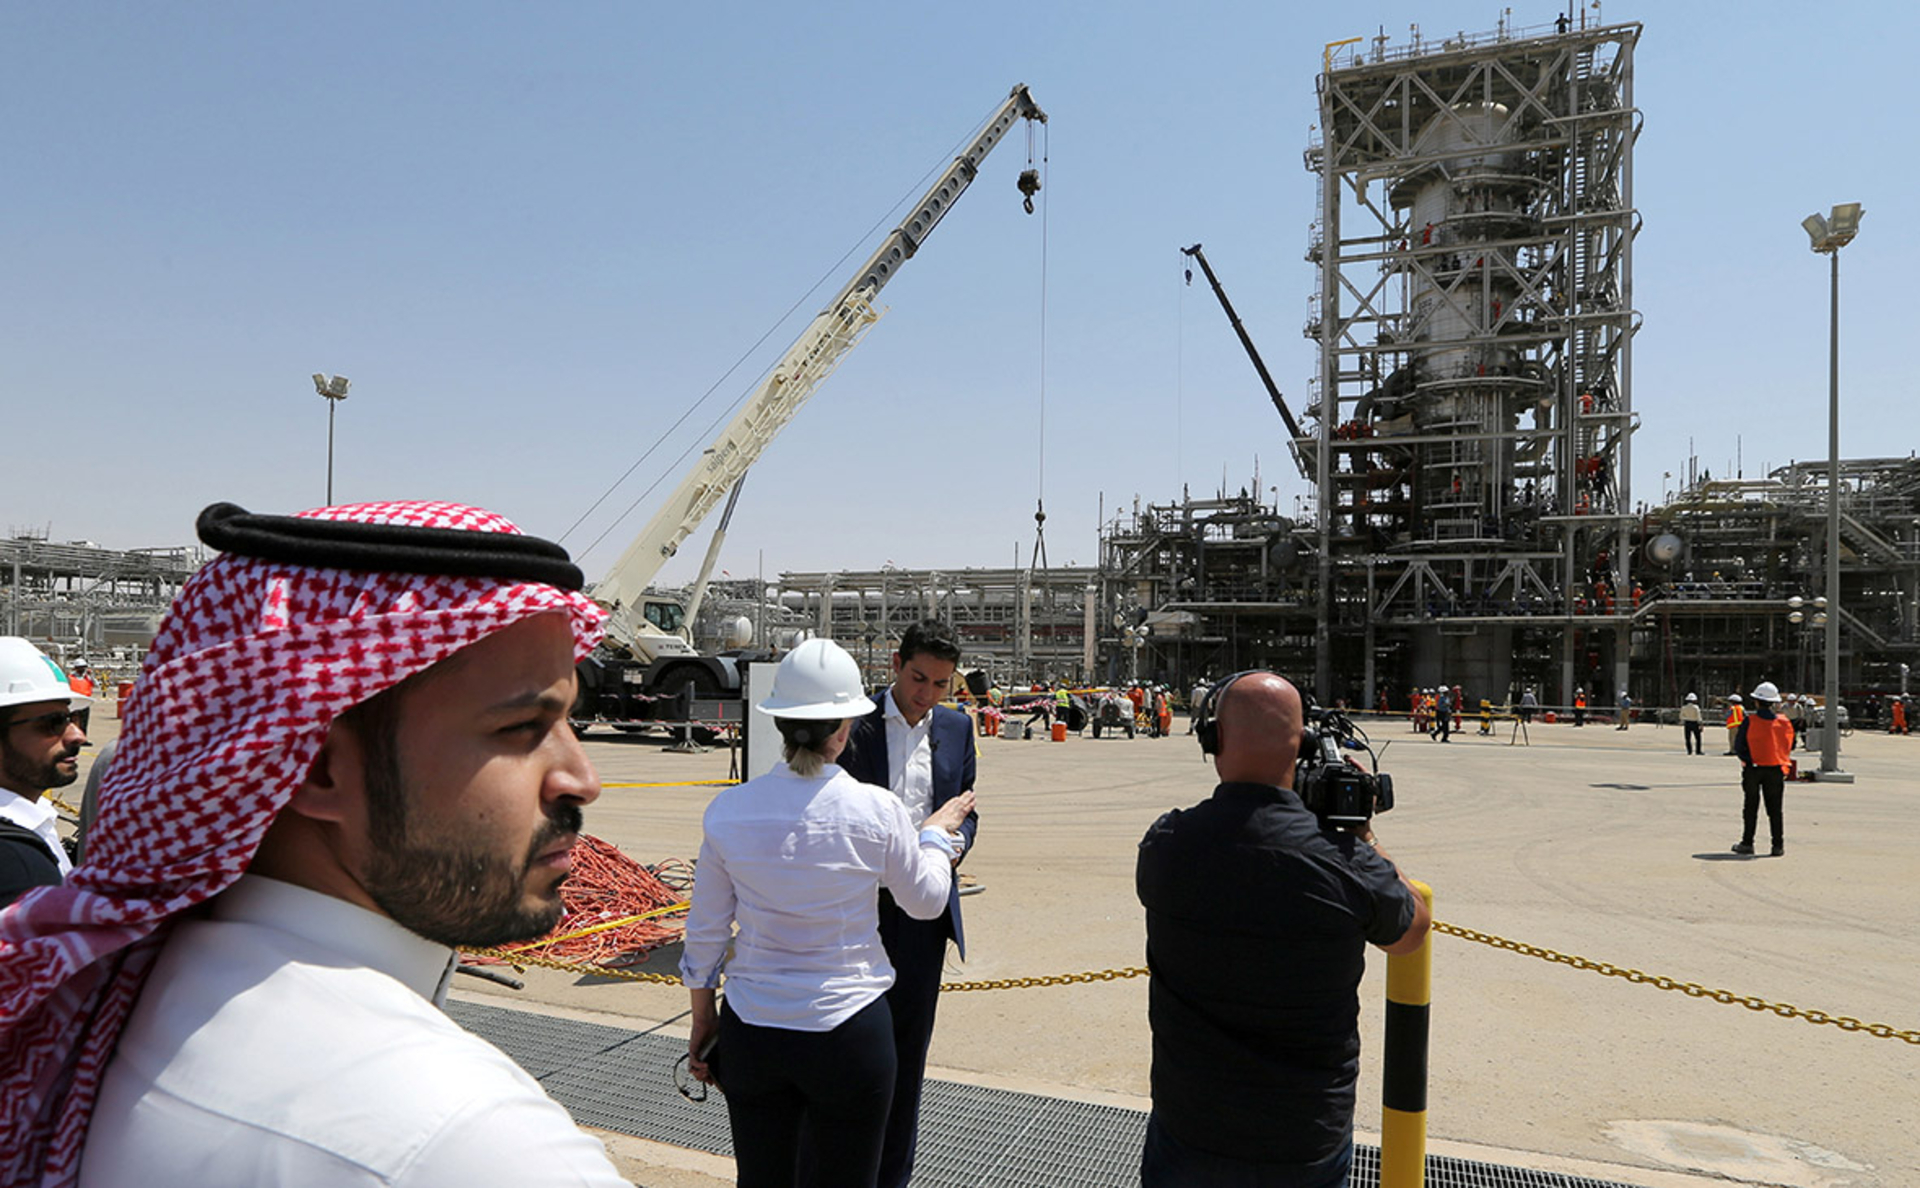 Саудовская аравия развитая. Завод в Саудовской Аравии Арамко. Нефтеперерабатывающий завод в Саудовской Аравии. Нефтяная промышленность Саудовской Аравии. Нефтегазовая промышленность Саудовской Аравии.